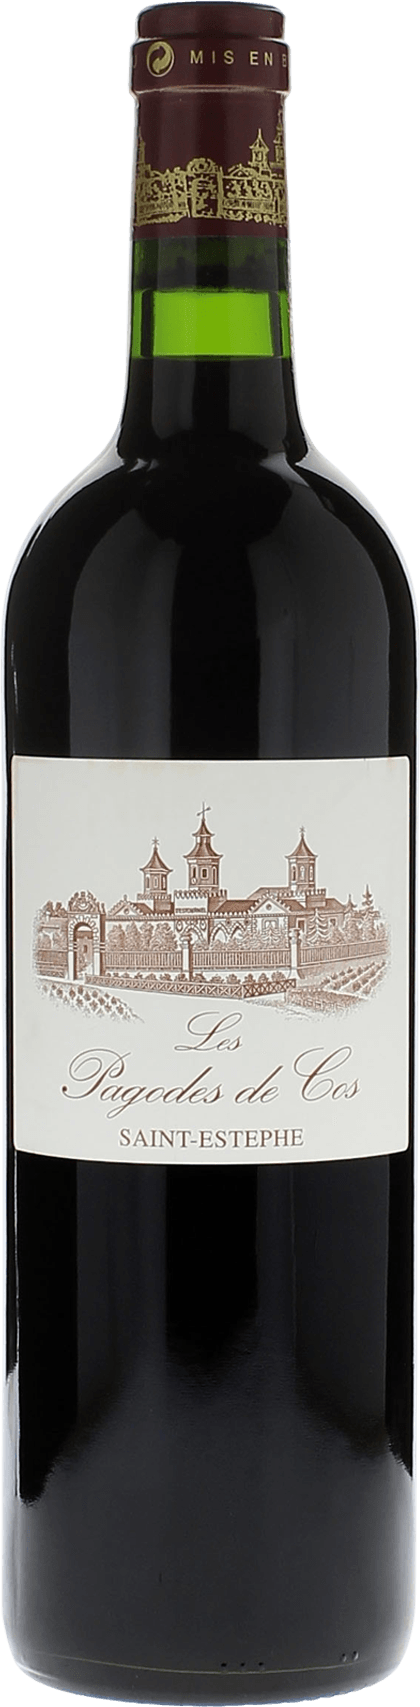 Pagodes de cos 2010 2me vin de COS D'ESTOURNEL Saint-Estphe, Bordeaux rouge